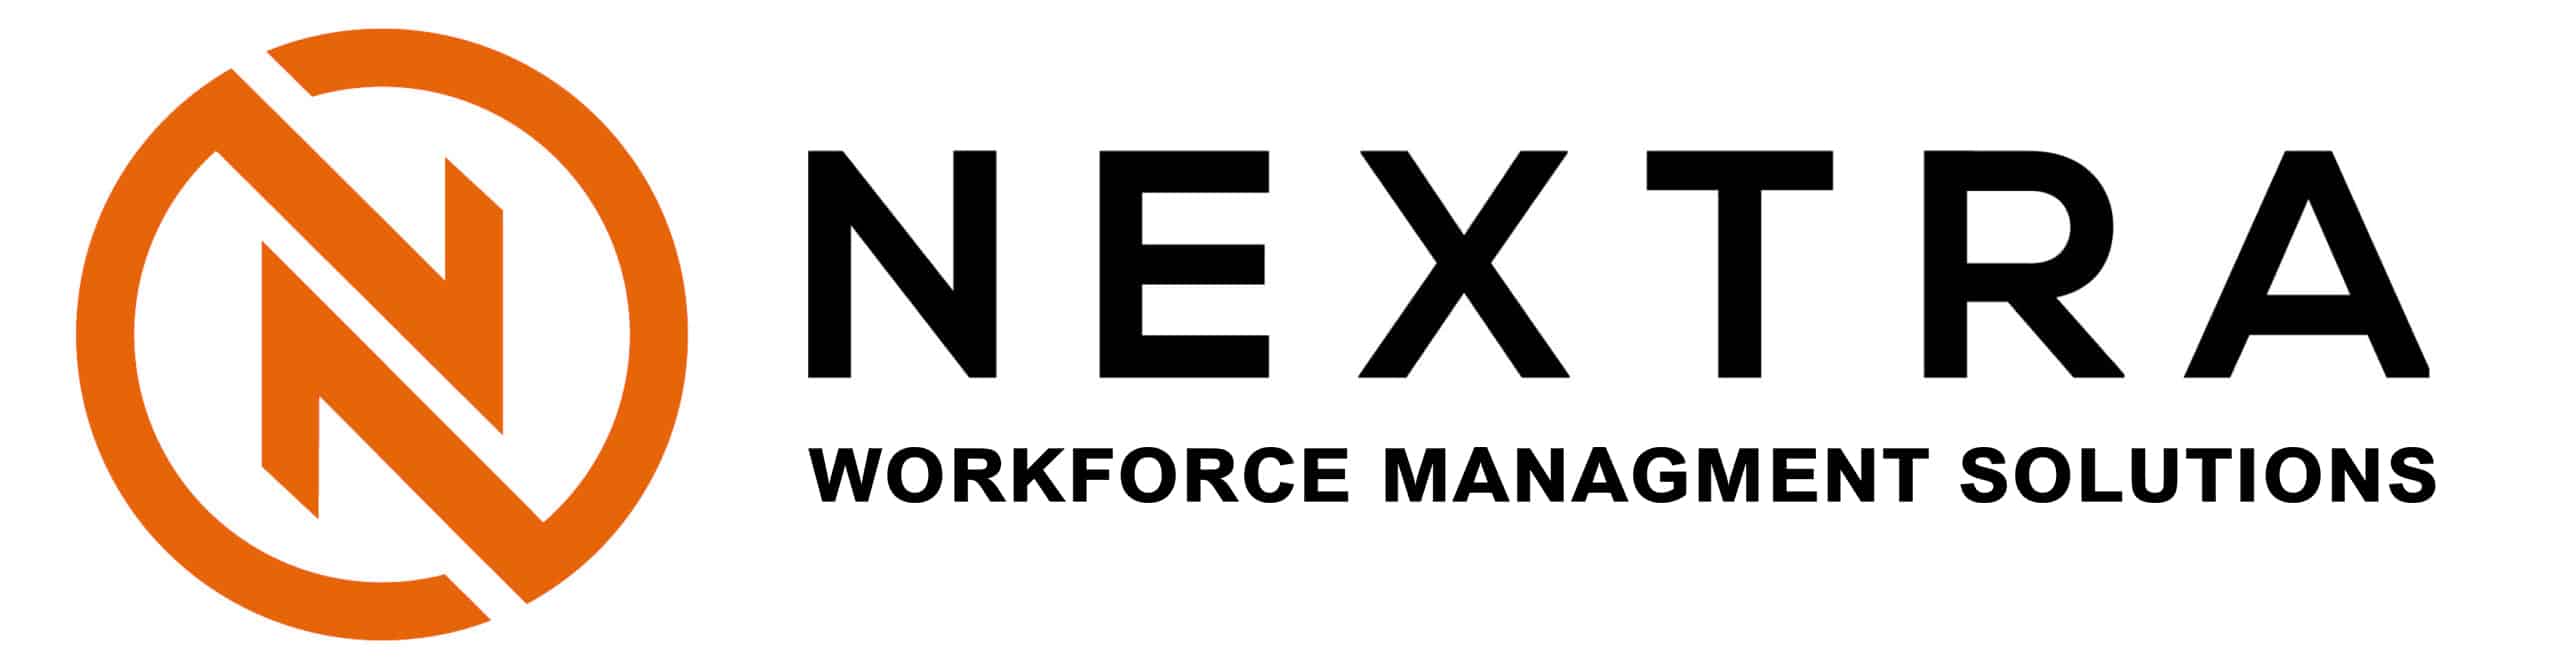 Nextrasoft - Workforce Management